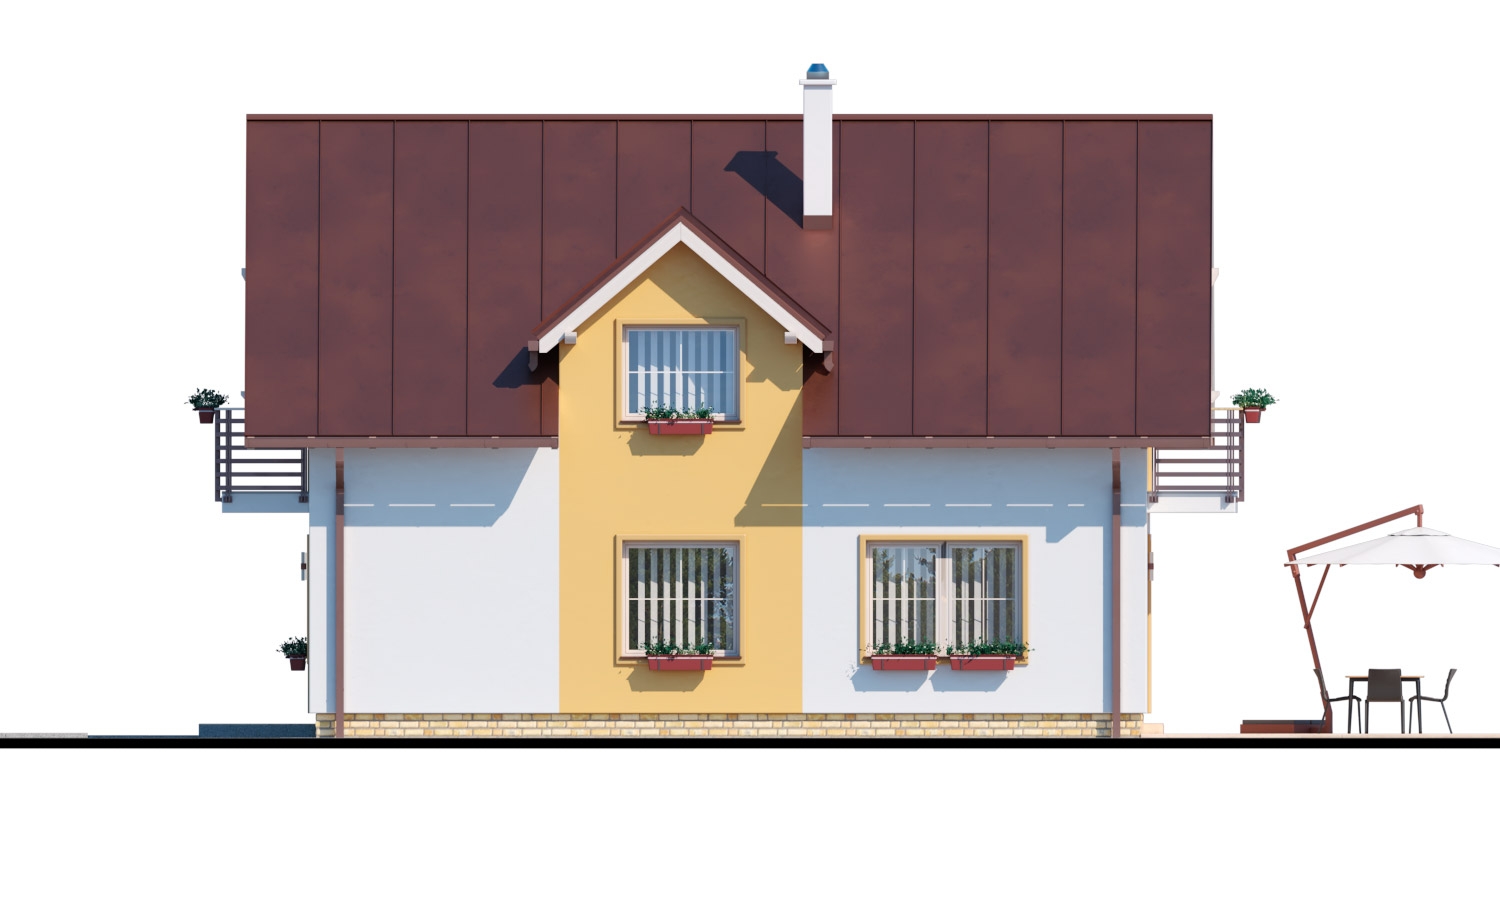 Zrkadlový pohľad 2. - Rodinný dům s přistavěnou garáží, pracovnou v přízemí, třemi pokoji na patře a krbem.